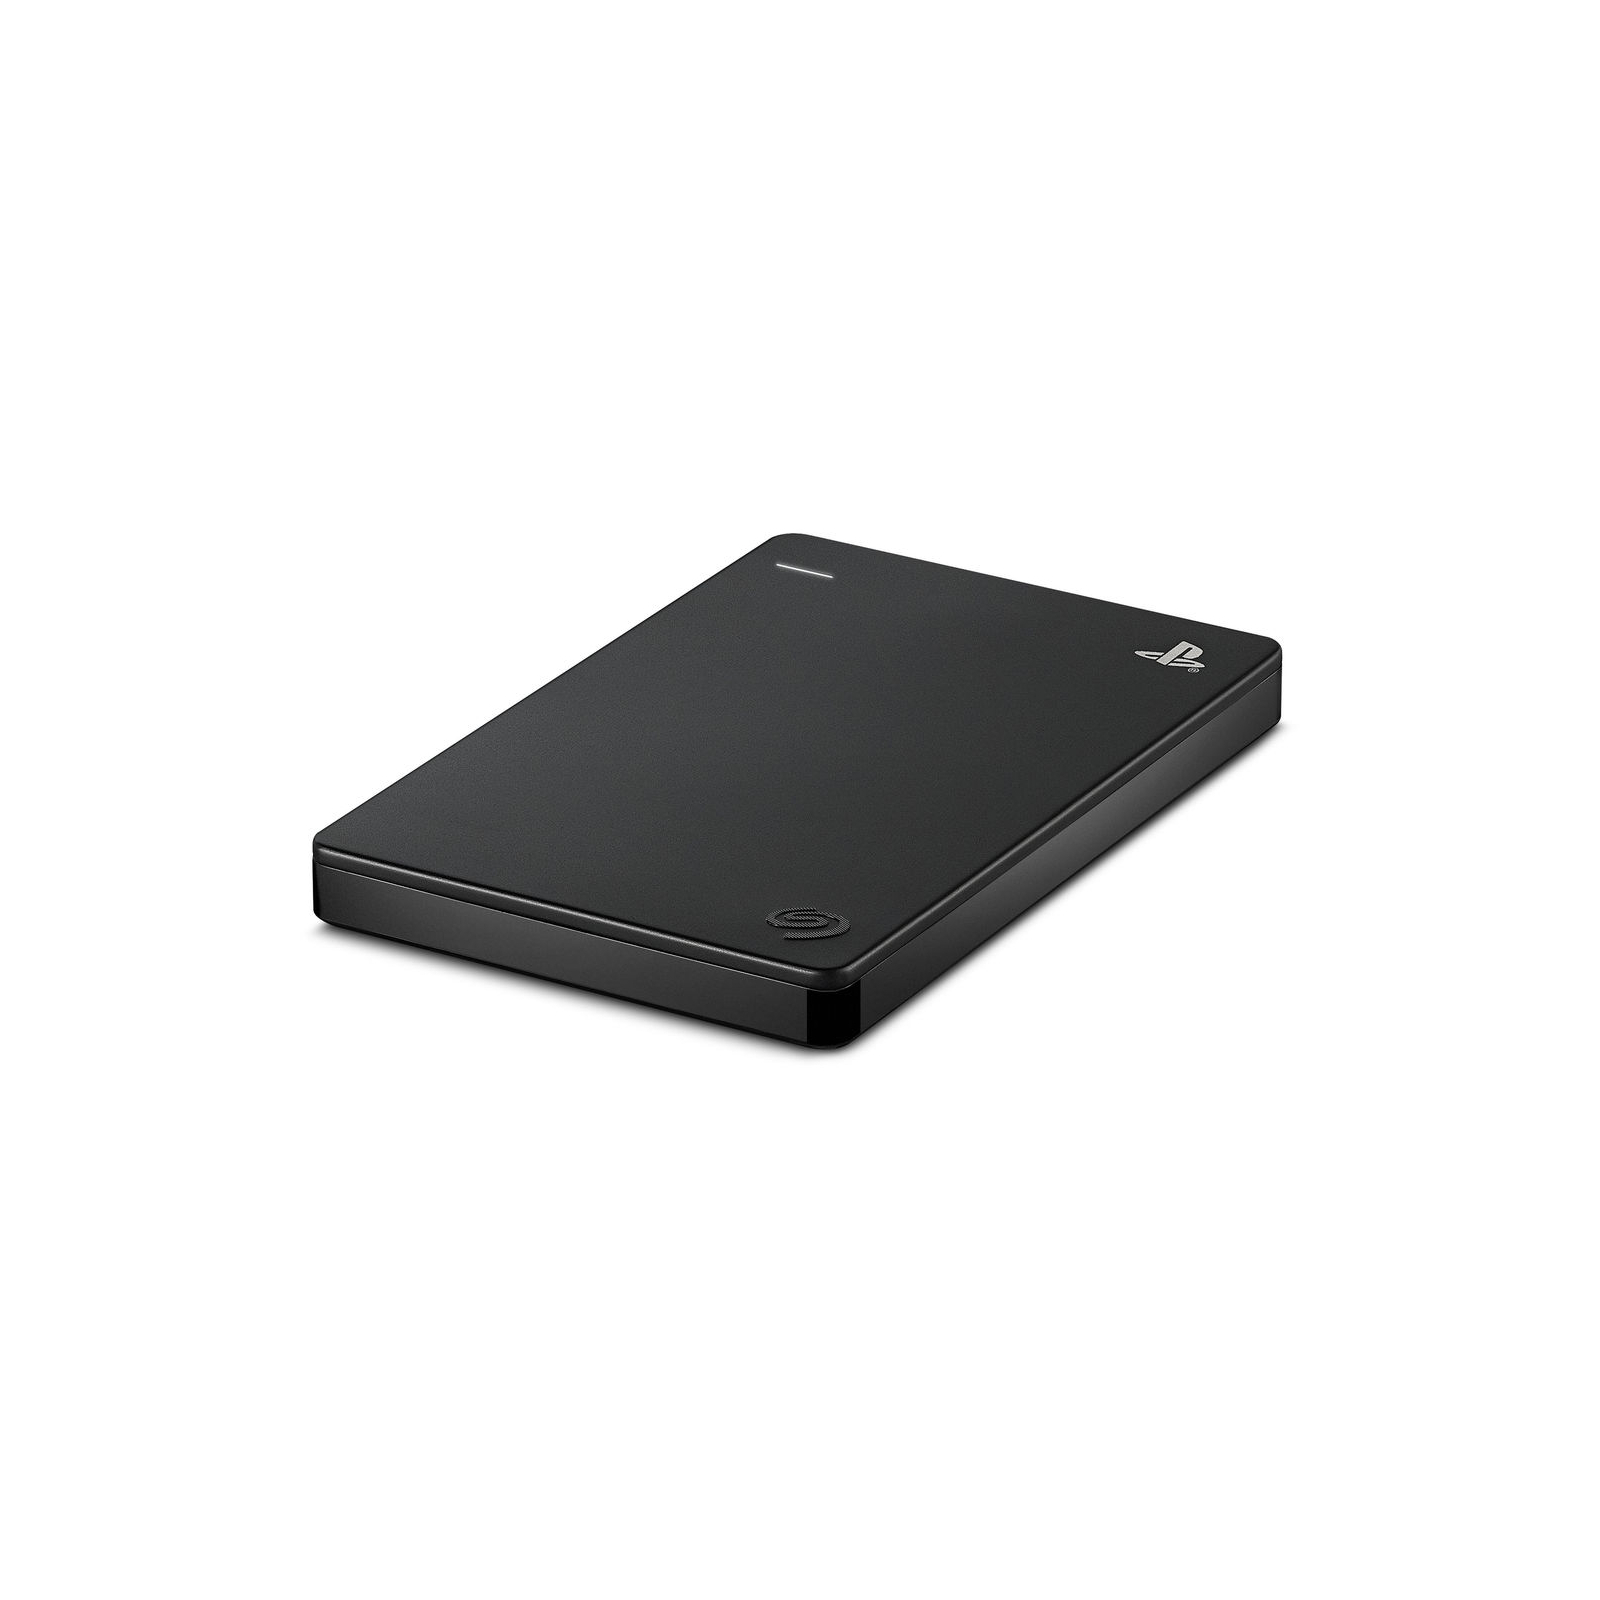 Зовнішній жорсткий диск 2.5" 2TB Game Drive for PlayStation Seagate (STGD2000400) зображення 3